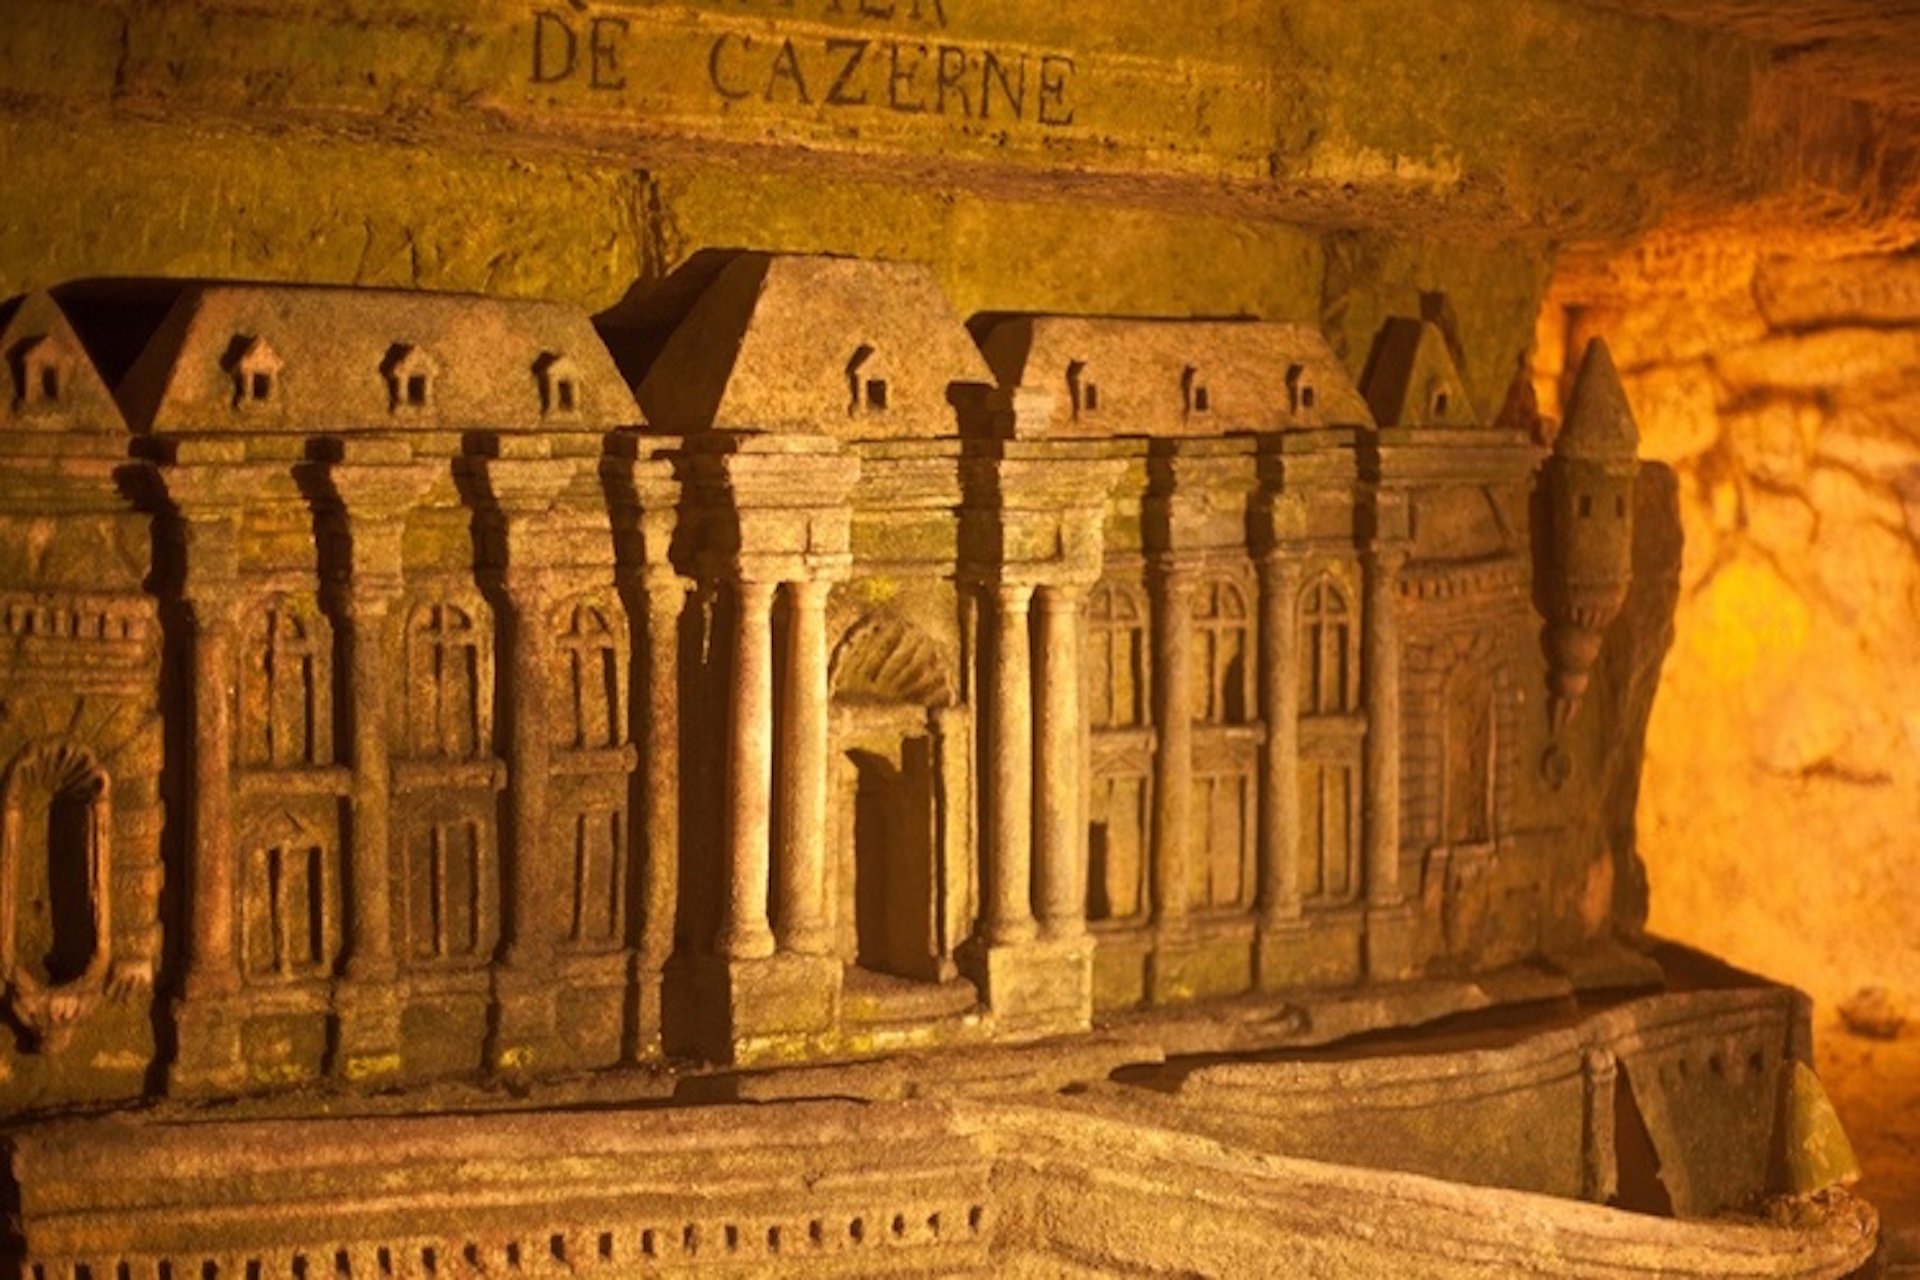 virtual tour of the paris catacombs